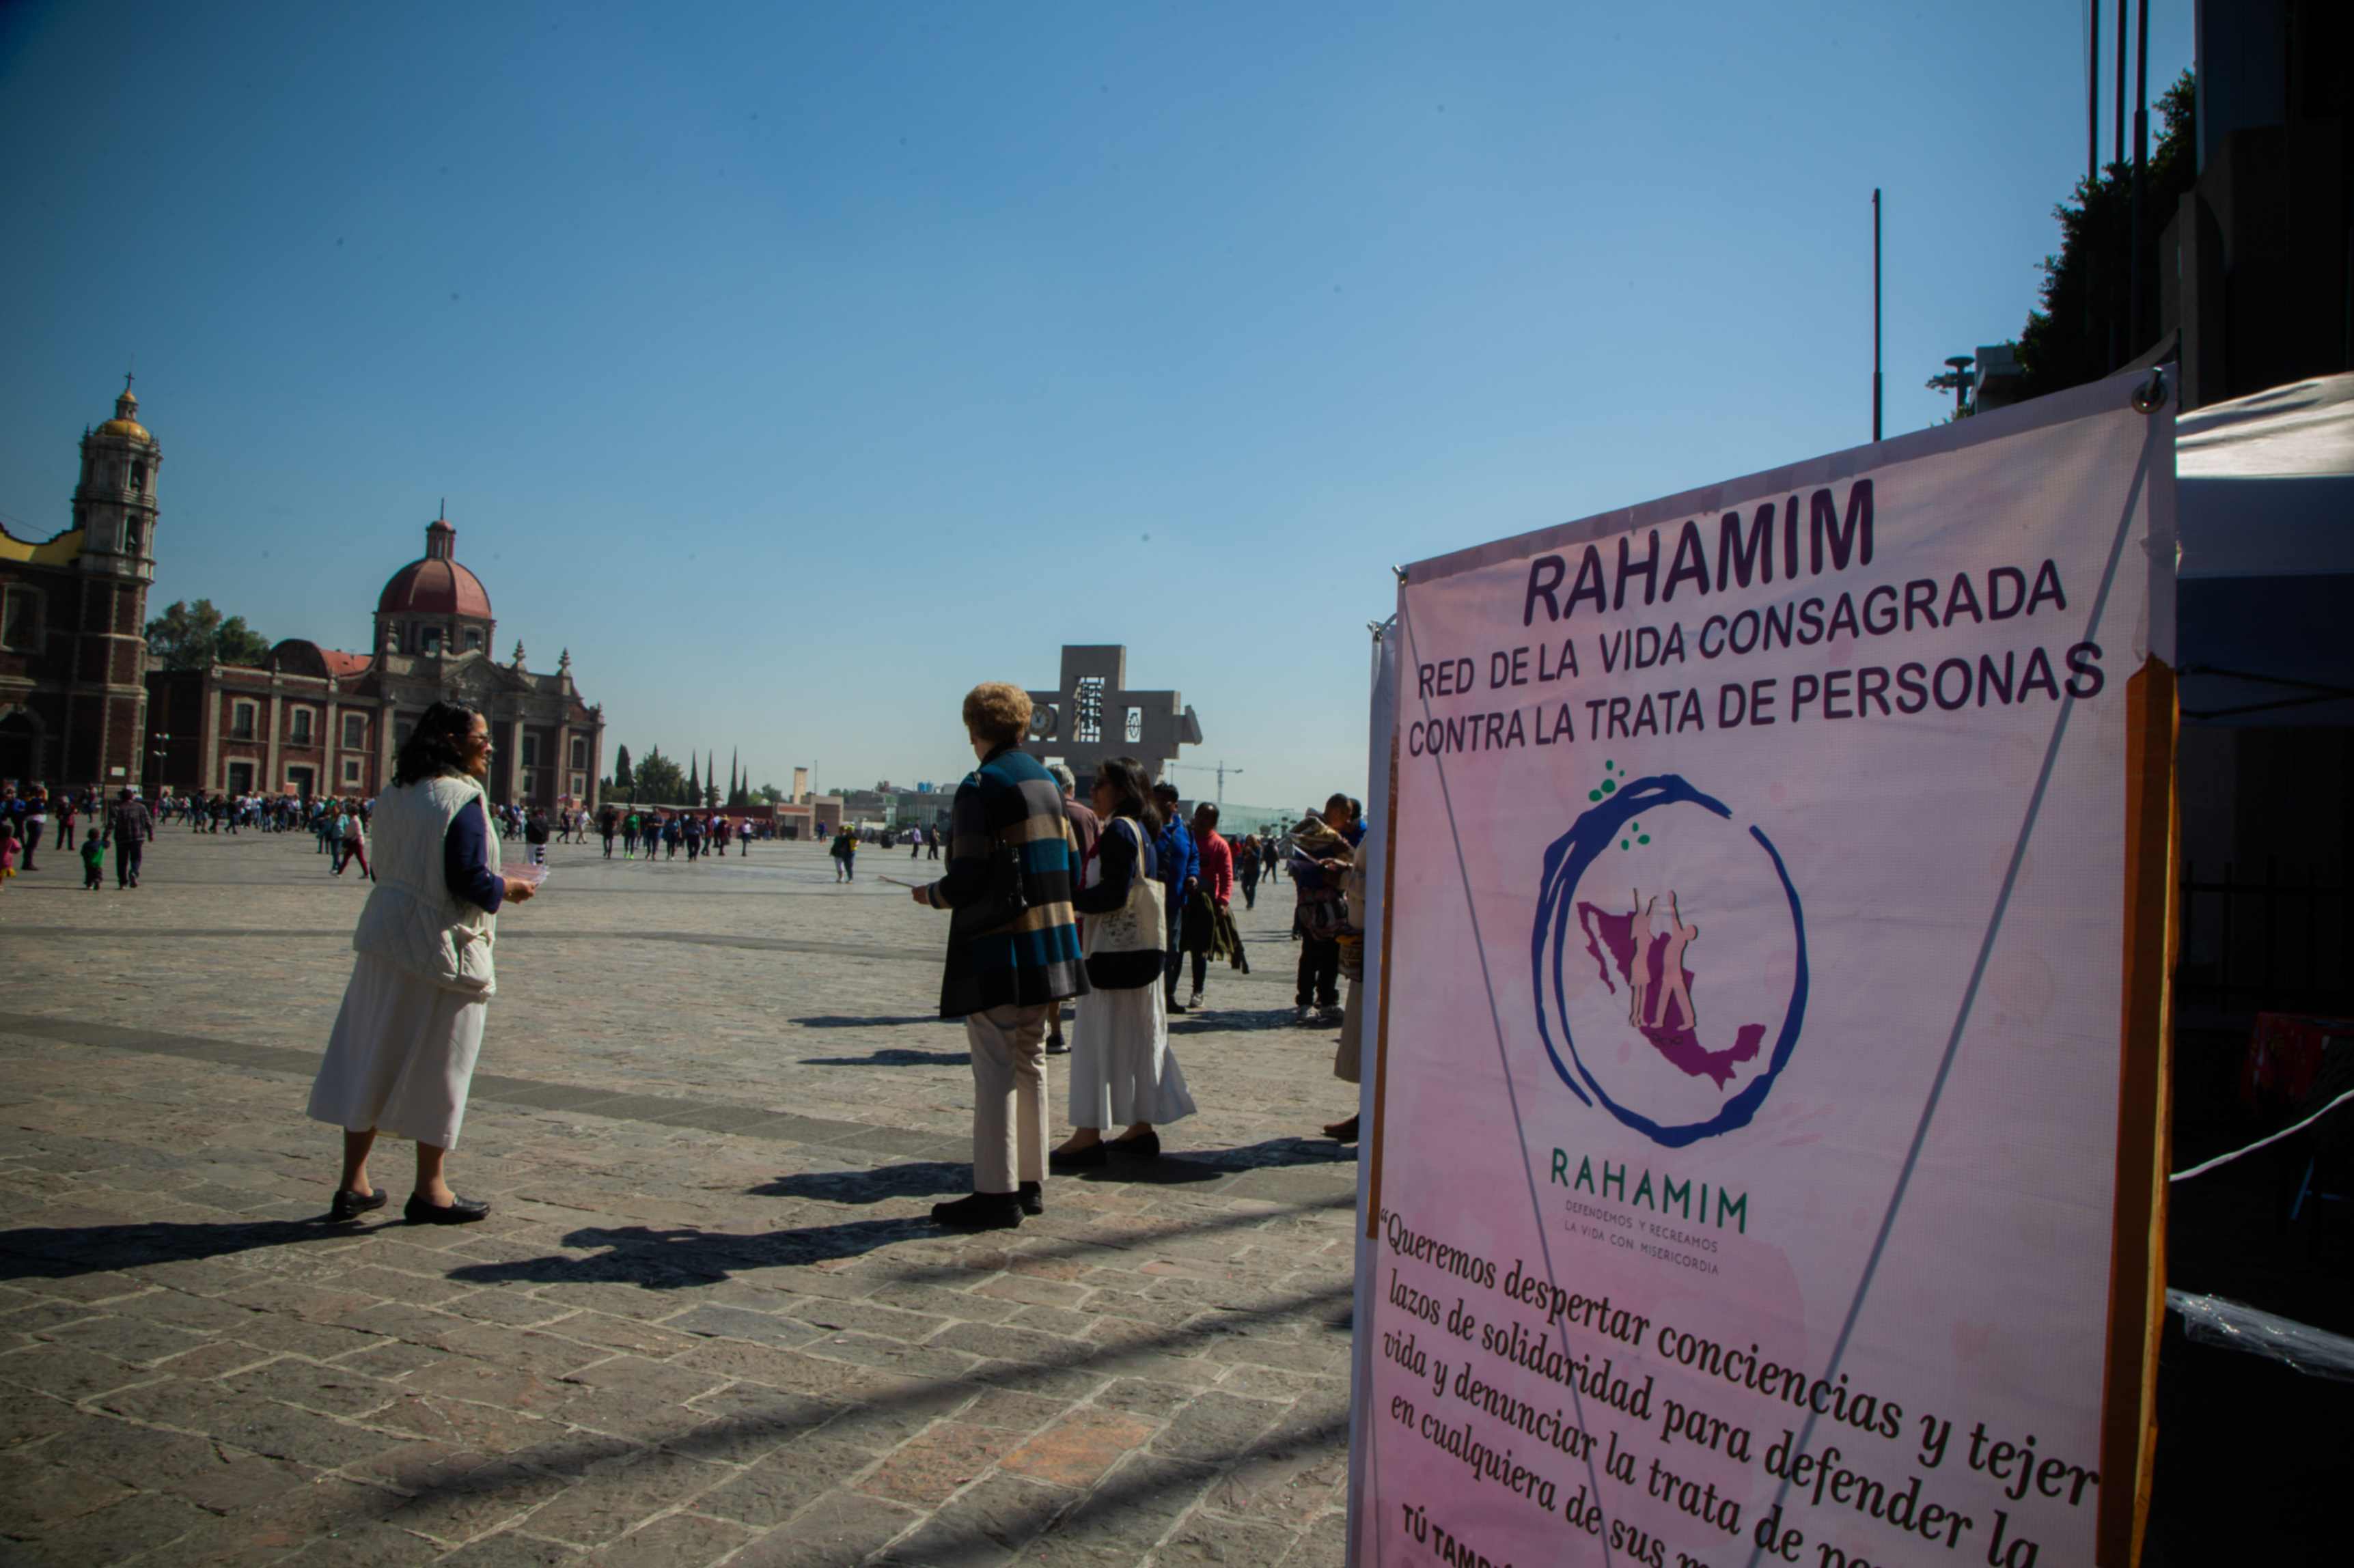 La red Rahamim, integrada por varias congregaciones religiosas mexicanas que trabajan contra la trata de personas a través de México, forma parte de Talitha Kum, la red internacional de la vida consagrada que enfrenta este flagelo. (Foto: GSR/ Samuel Bregolin)